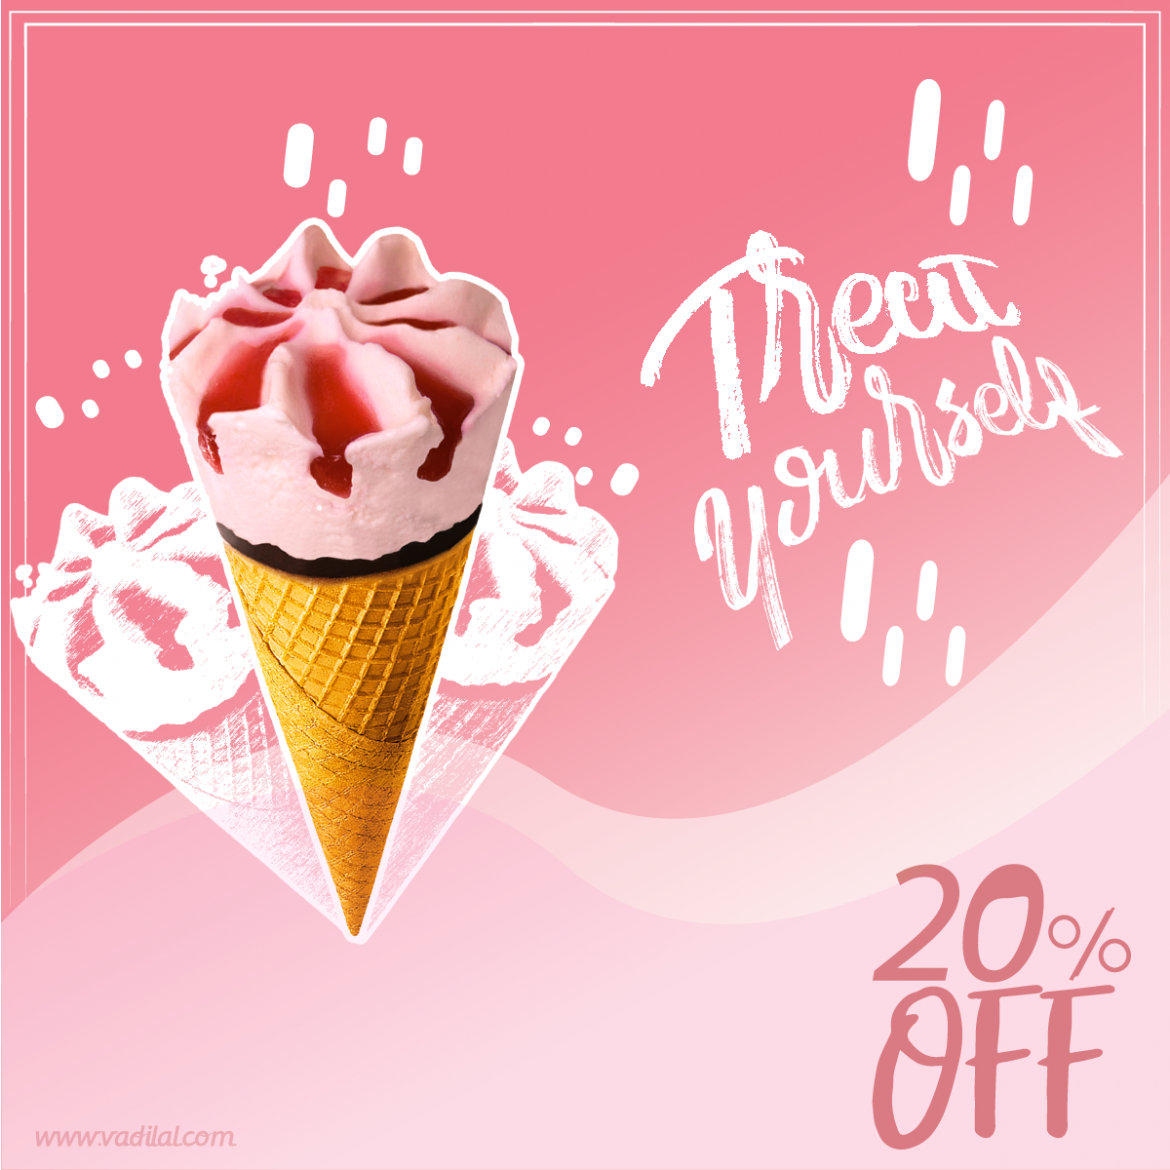 Delicious Ice Cream Cone Ad Banner